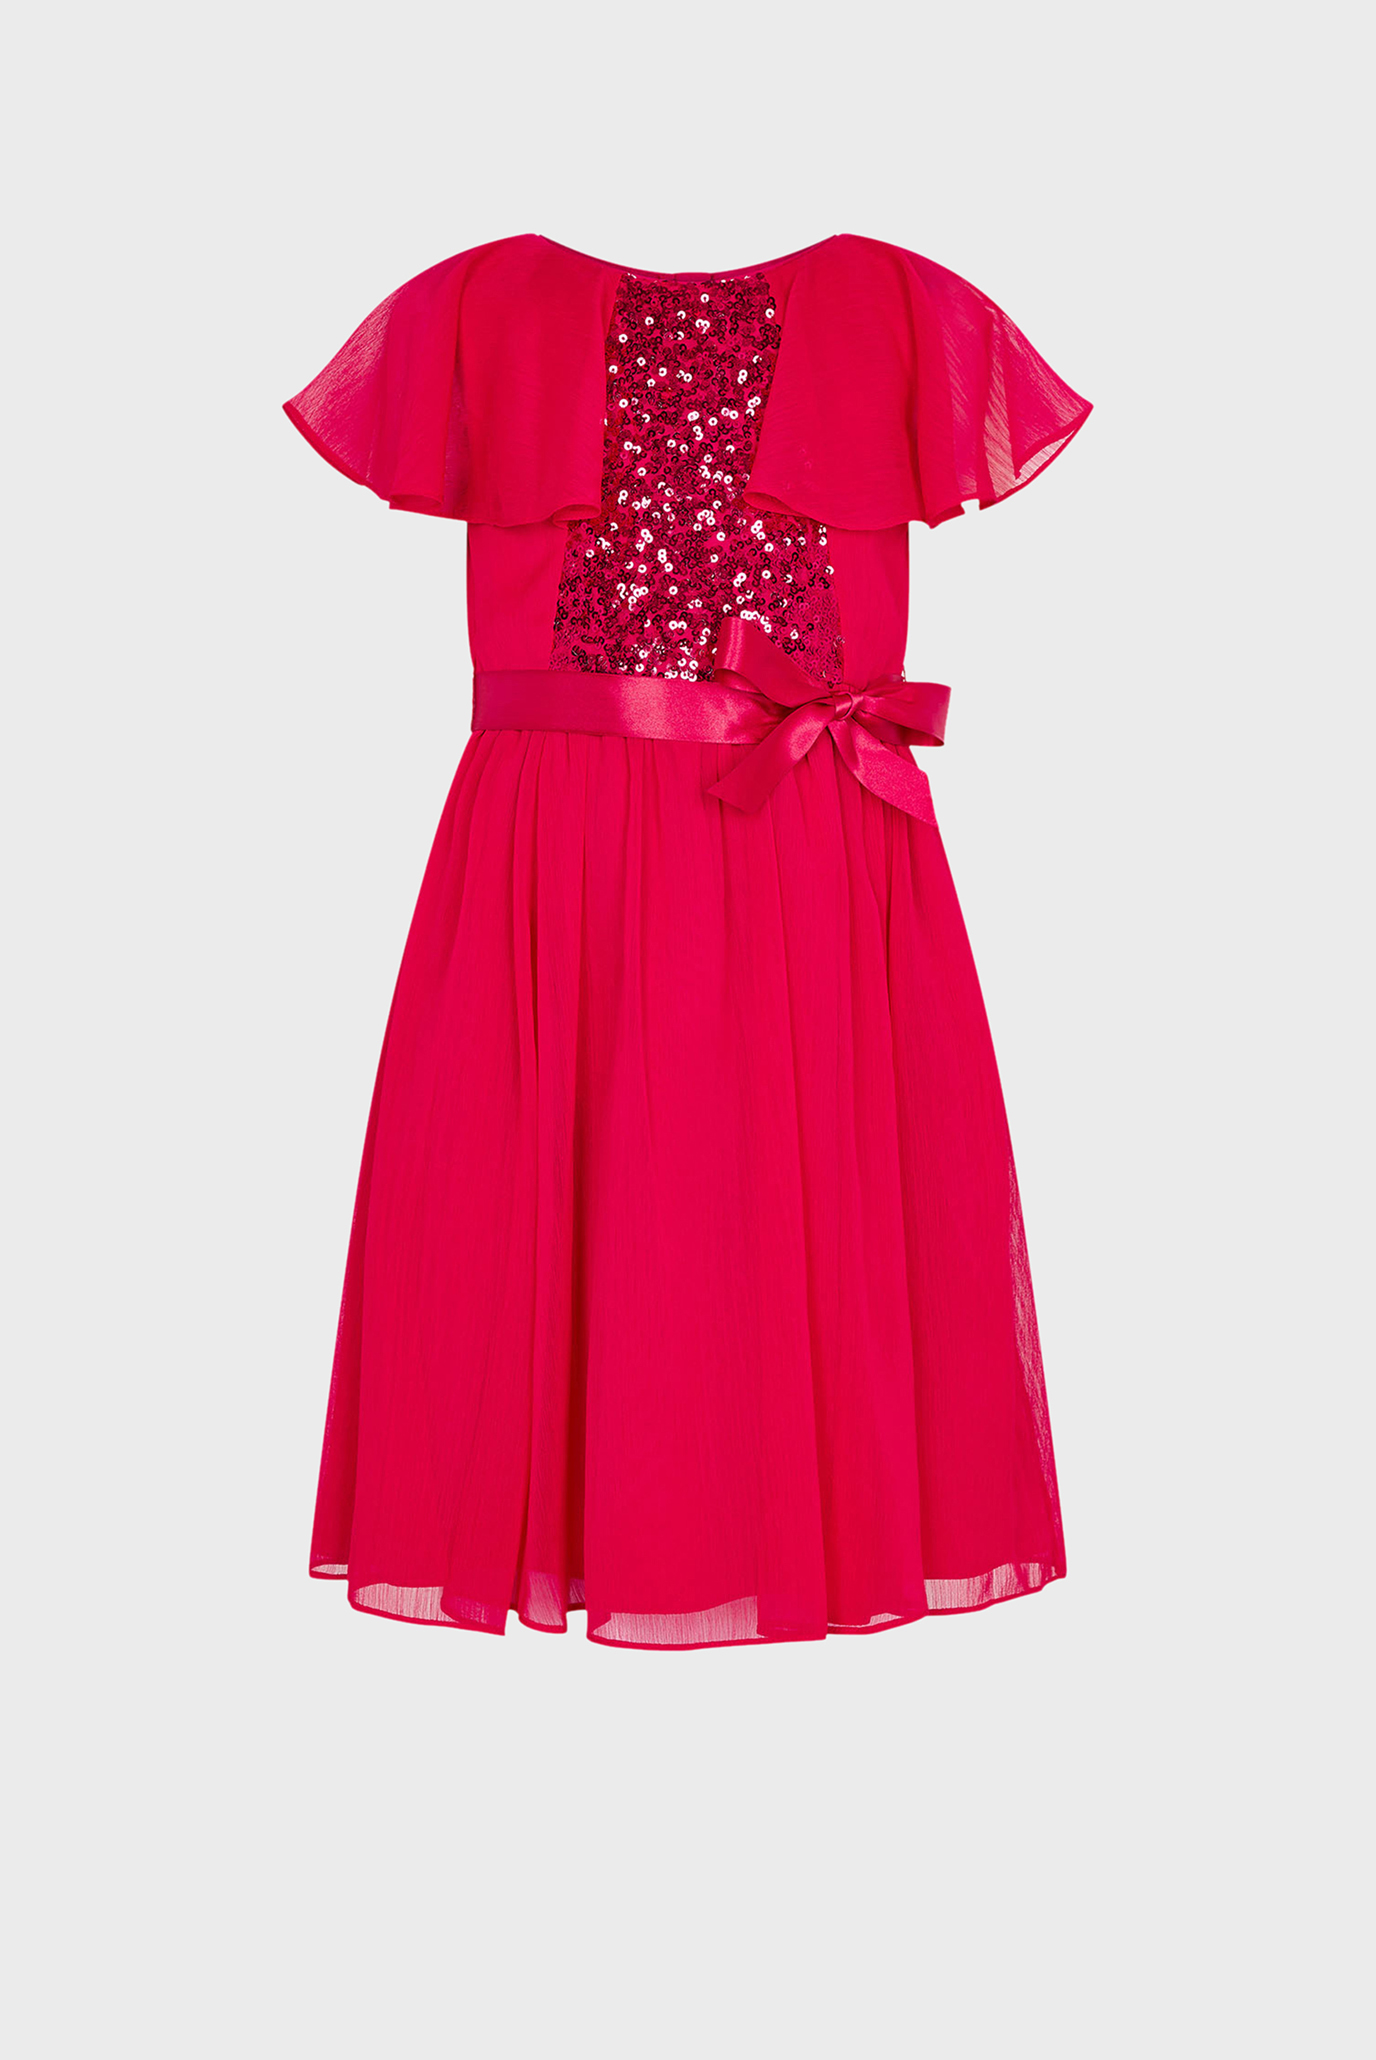 Дитяча червона сукня RED SEQUIN CAPE SLEE 1